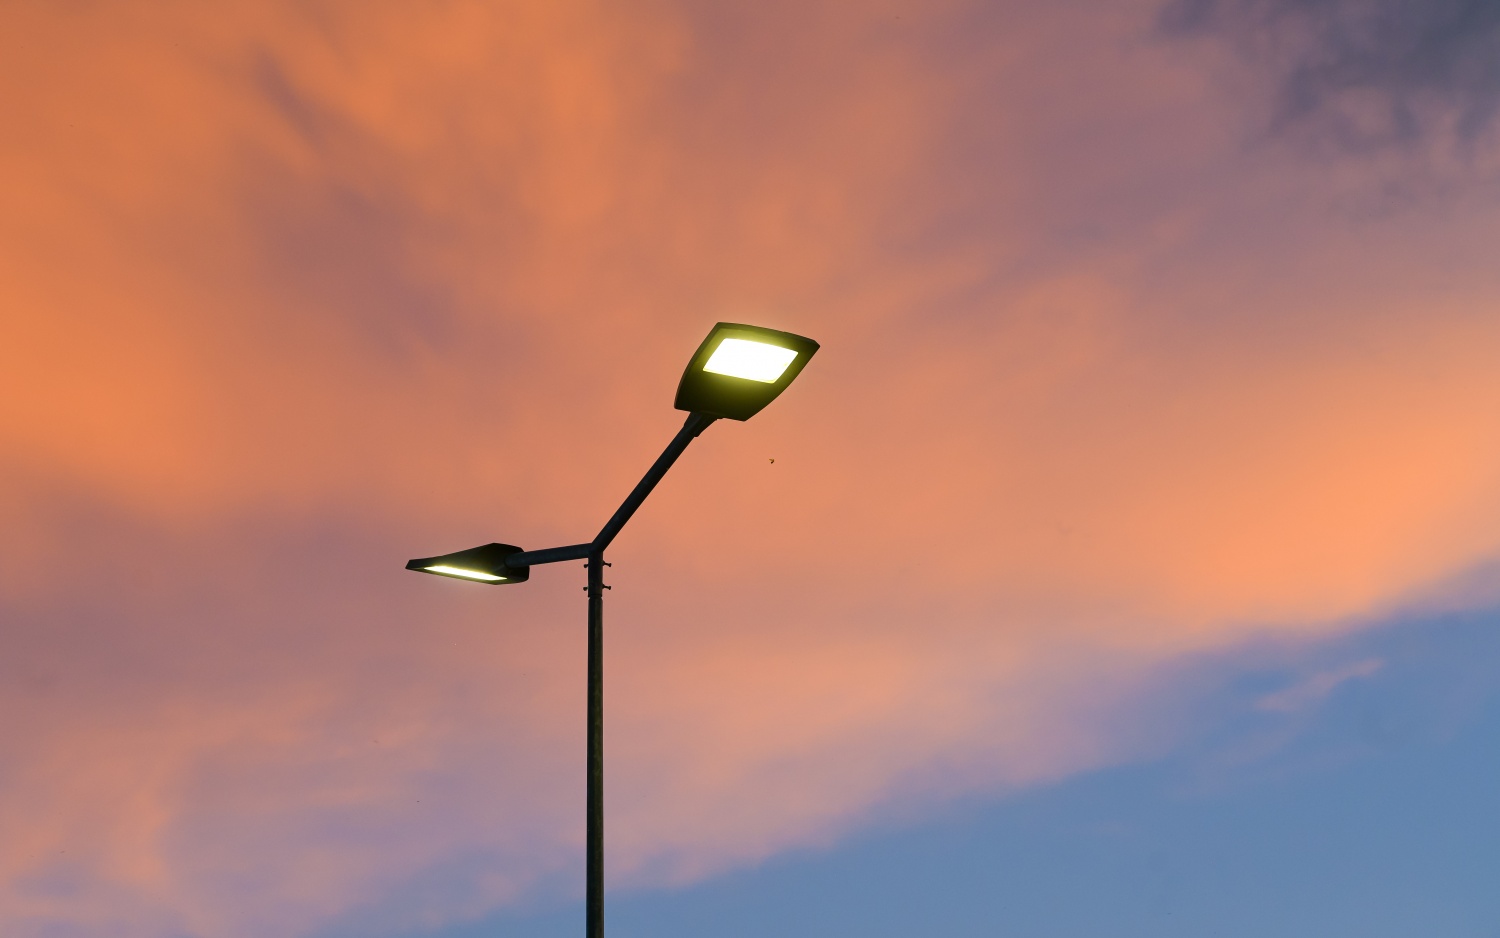 Преимущества использования опор ОГК-7 и освещения Street-Urban-85 в городском освещении